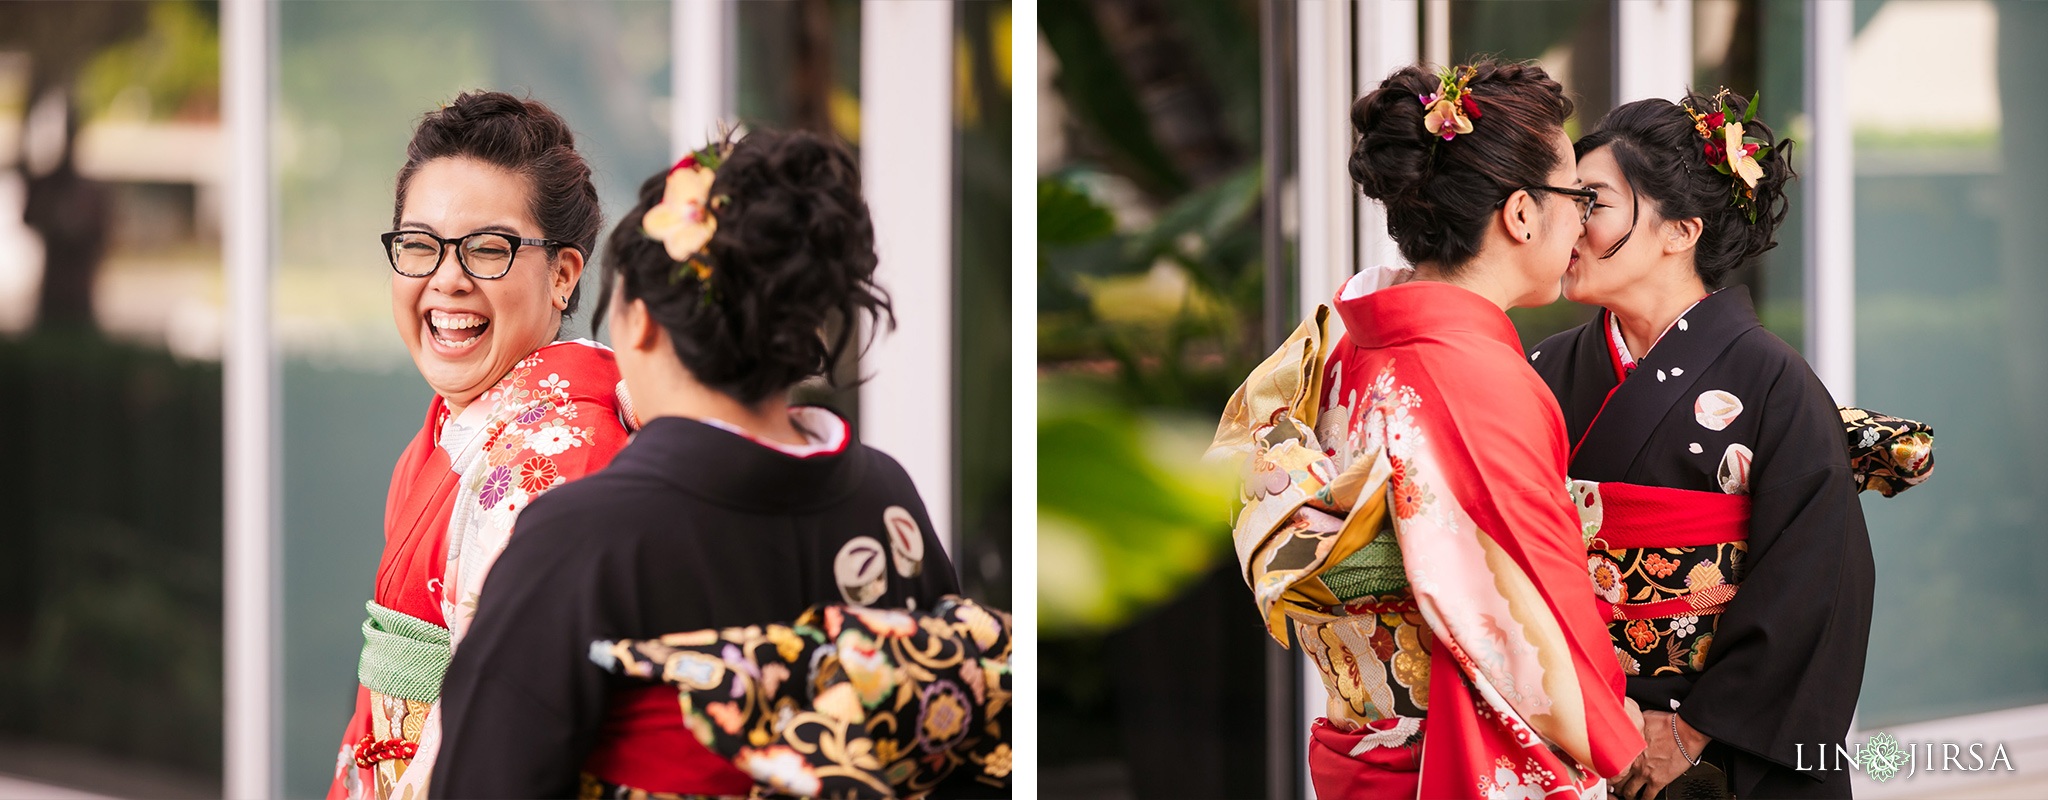 15 gardena valley japanese cultural center same sex wedding photography